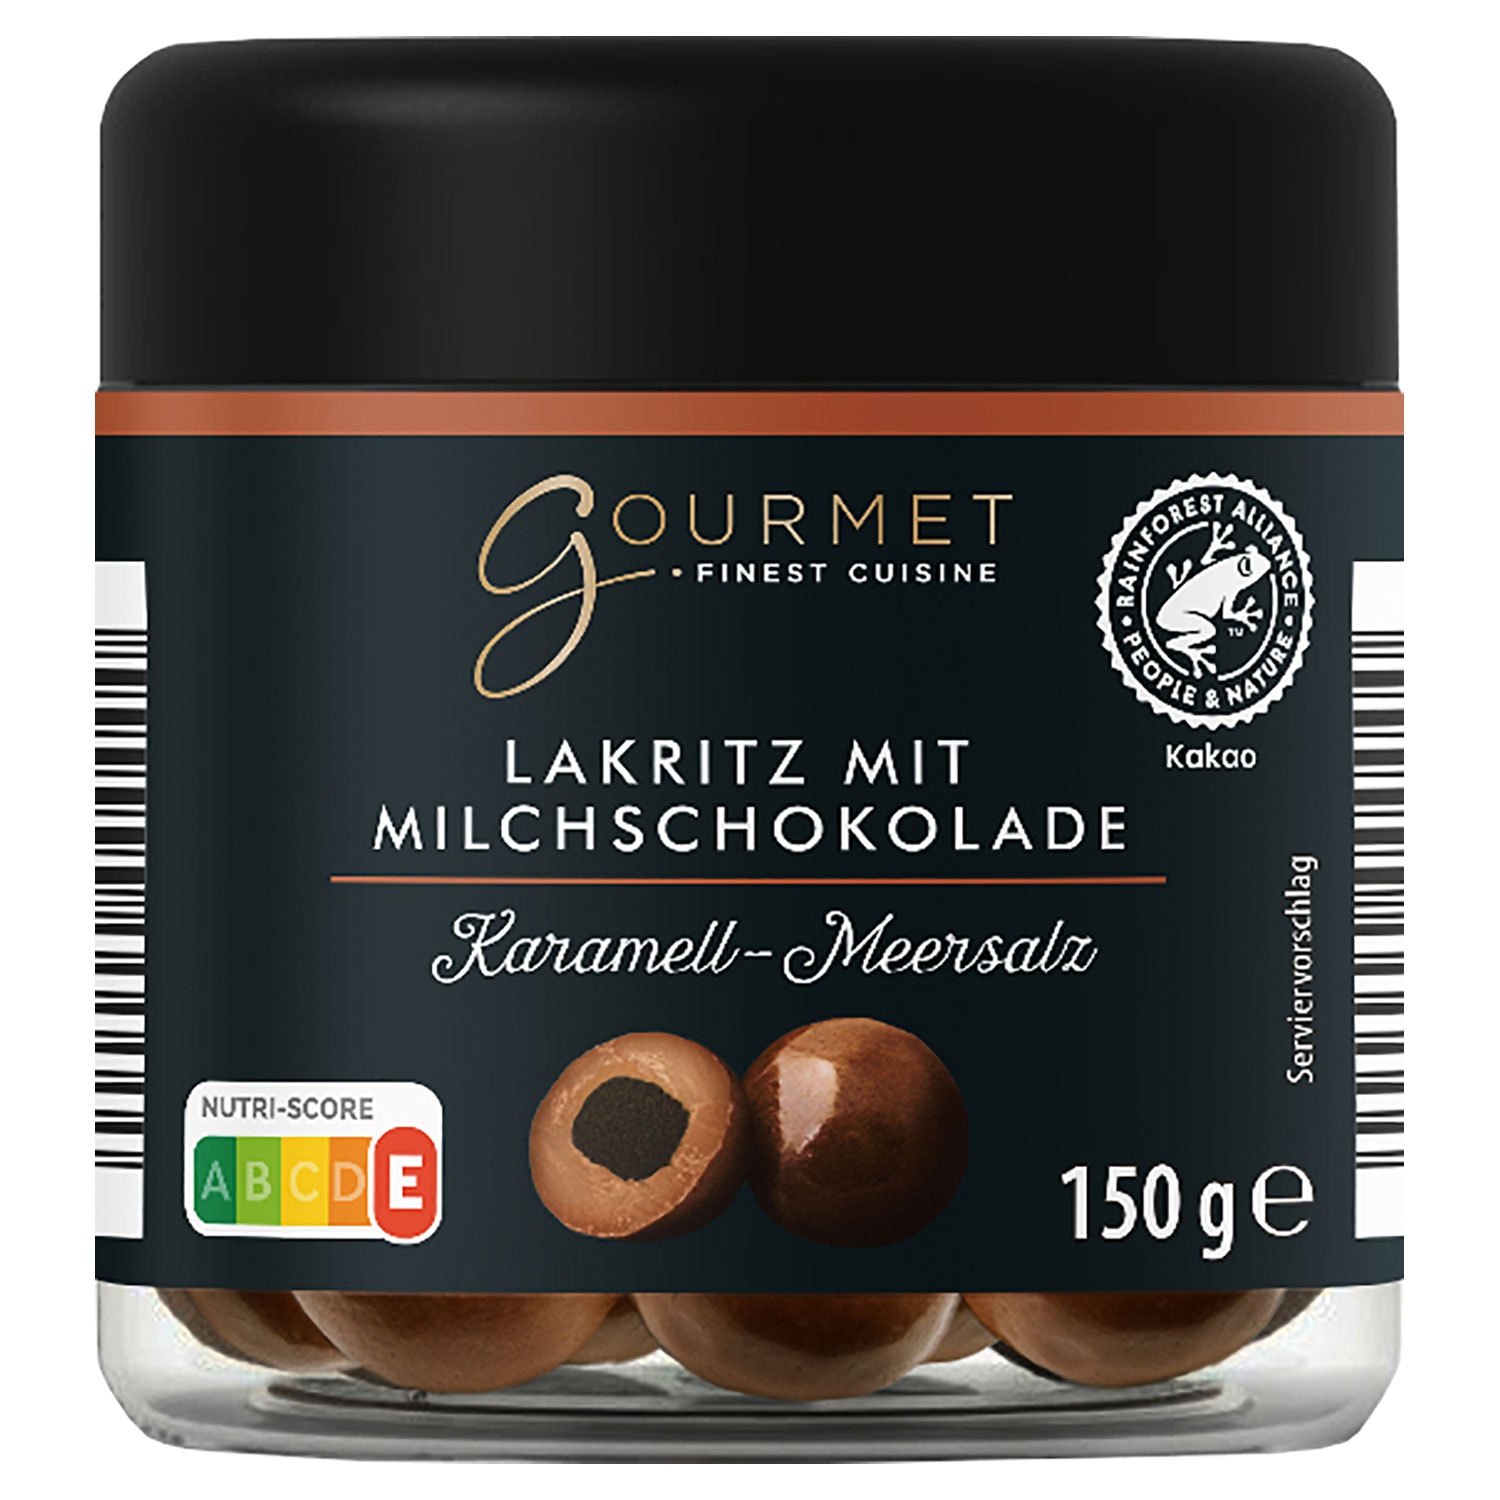 GOURMET FINEST CUISINE Lakritz mit Schokolade 150 g